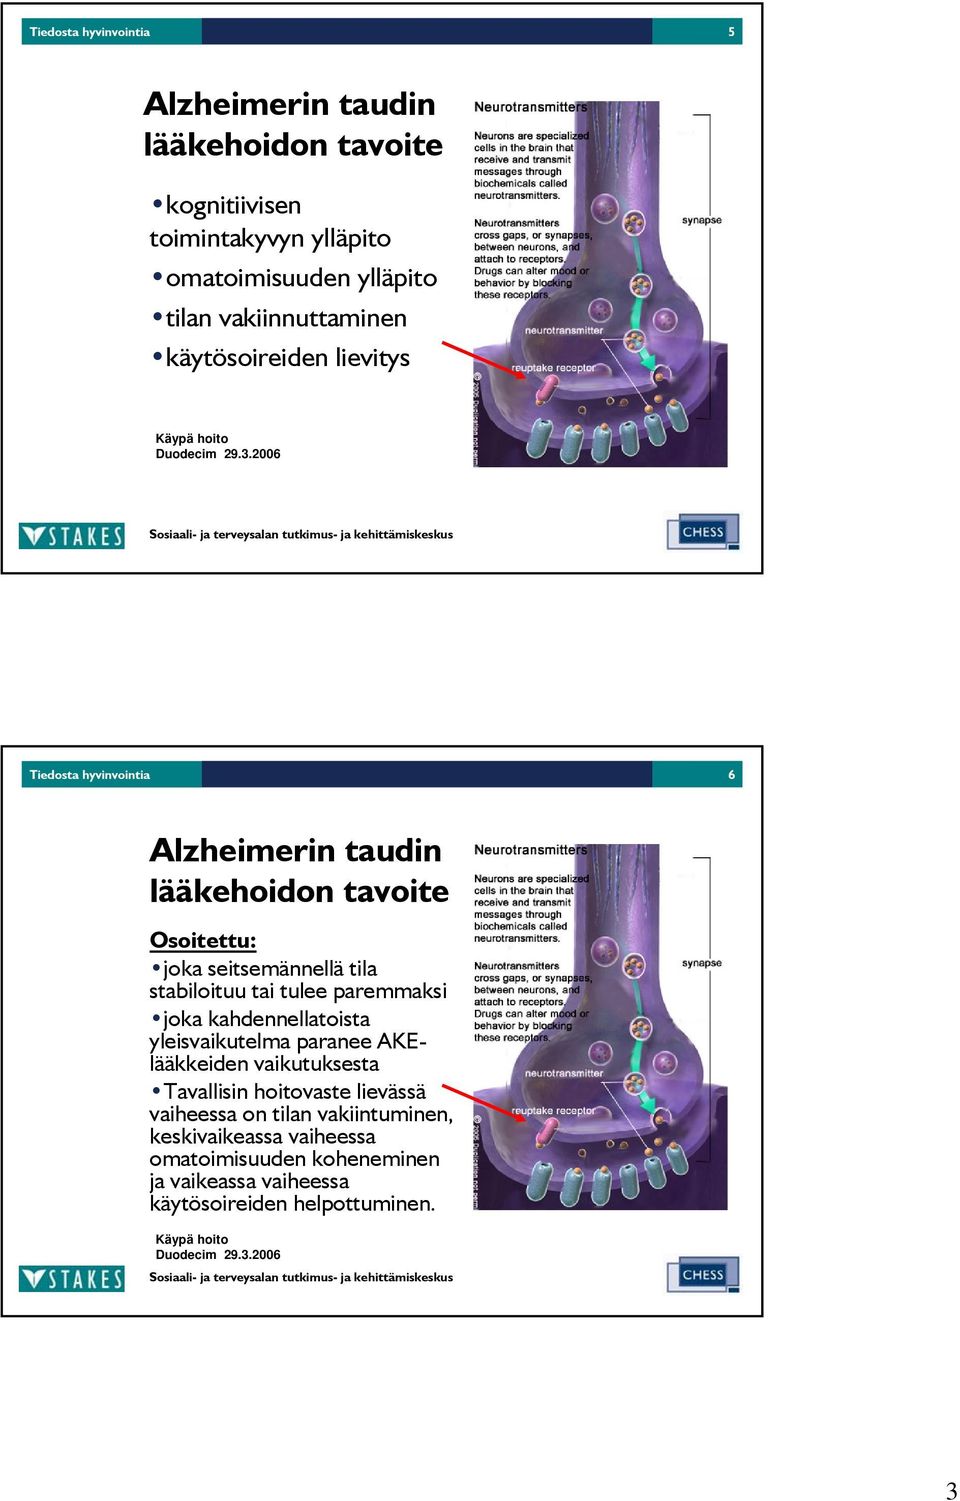 2006 Tiedosta hyvinvointia 6 Alzheimerin taudin lääkehoidon tavoite Osoitettu: joka seitsemännellä tila stabiloituu tai tulee paremmaksi joka